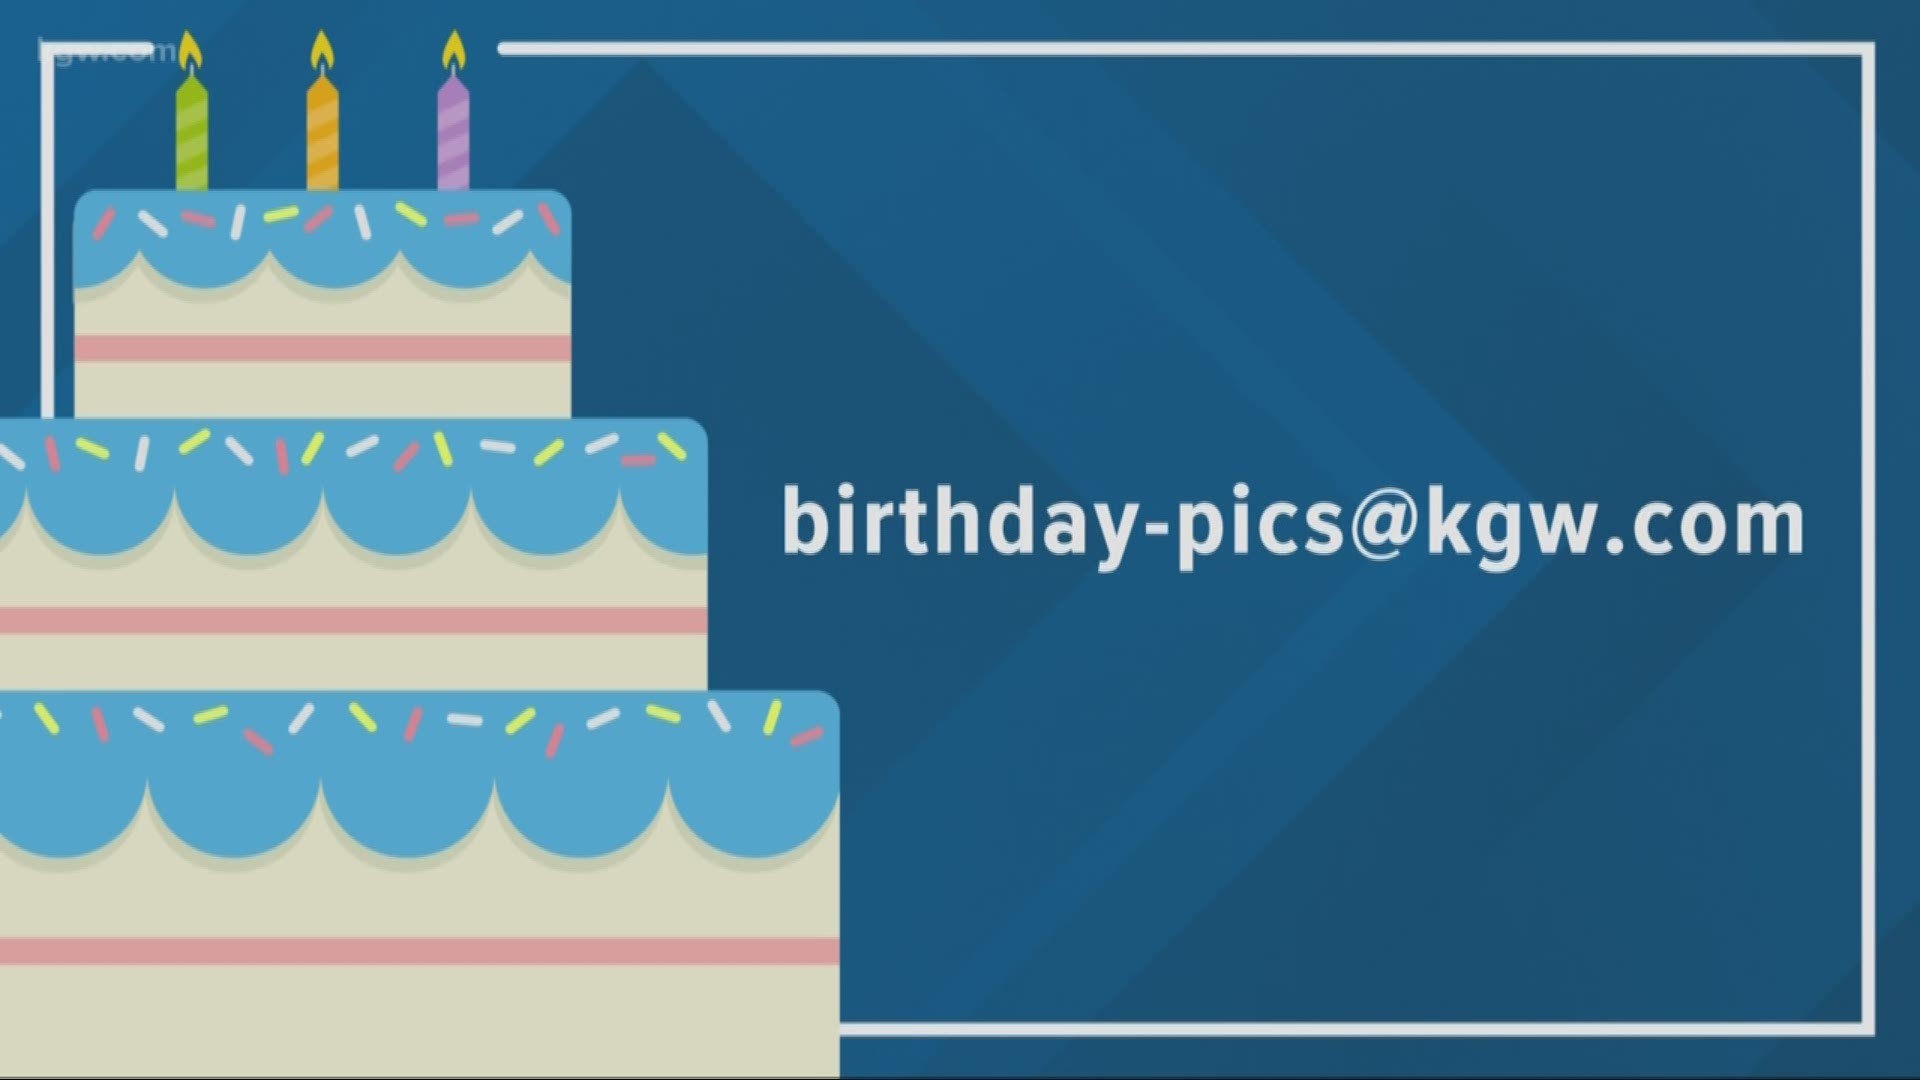 KGW viewer birthdays: 10-23-18